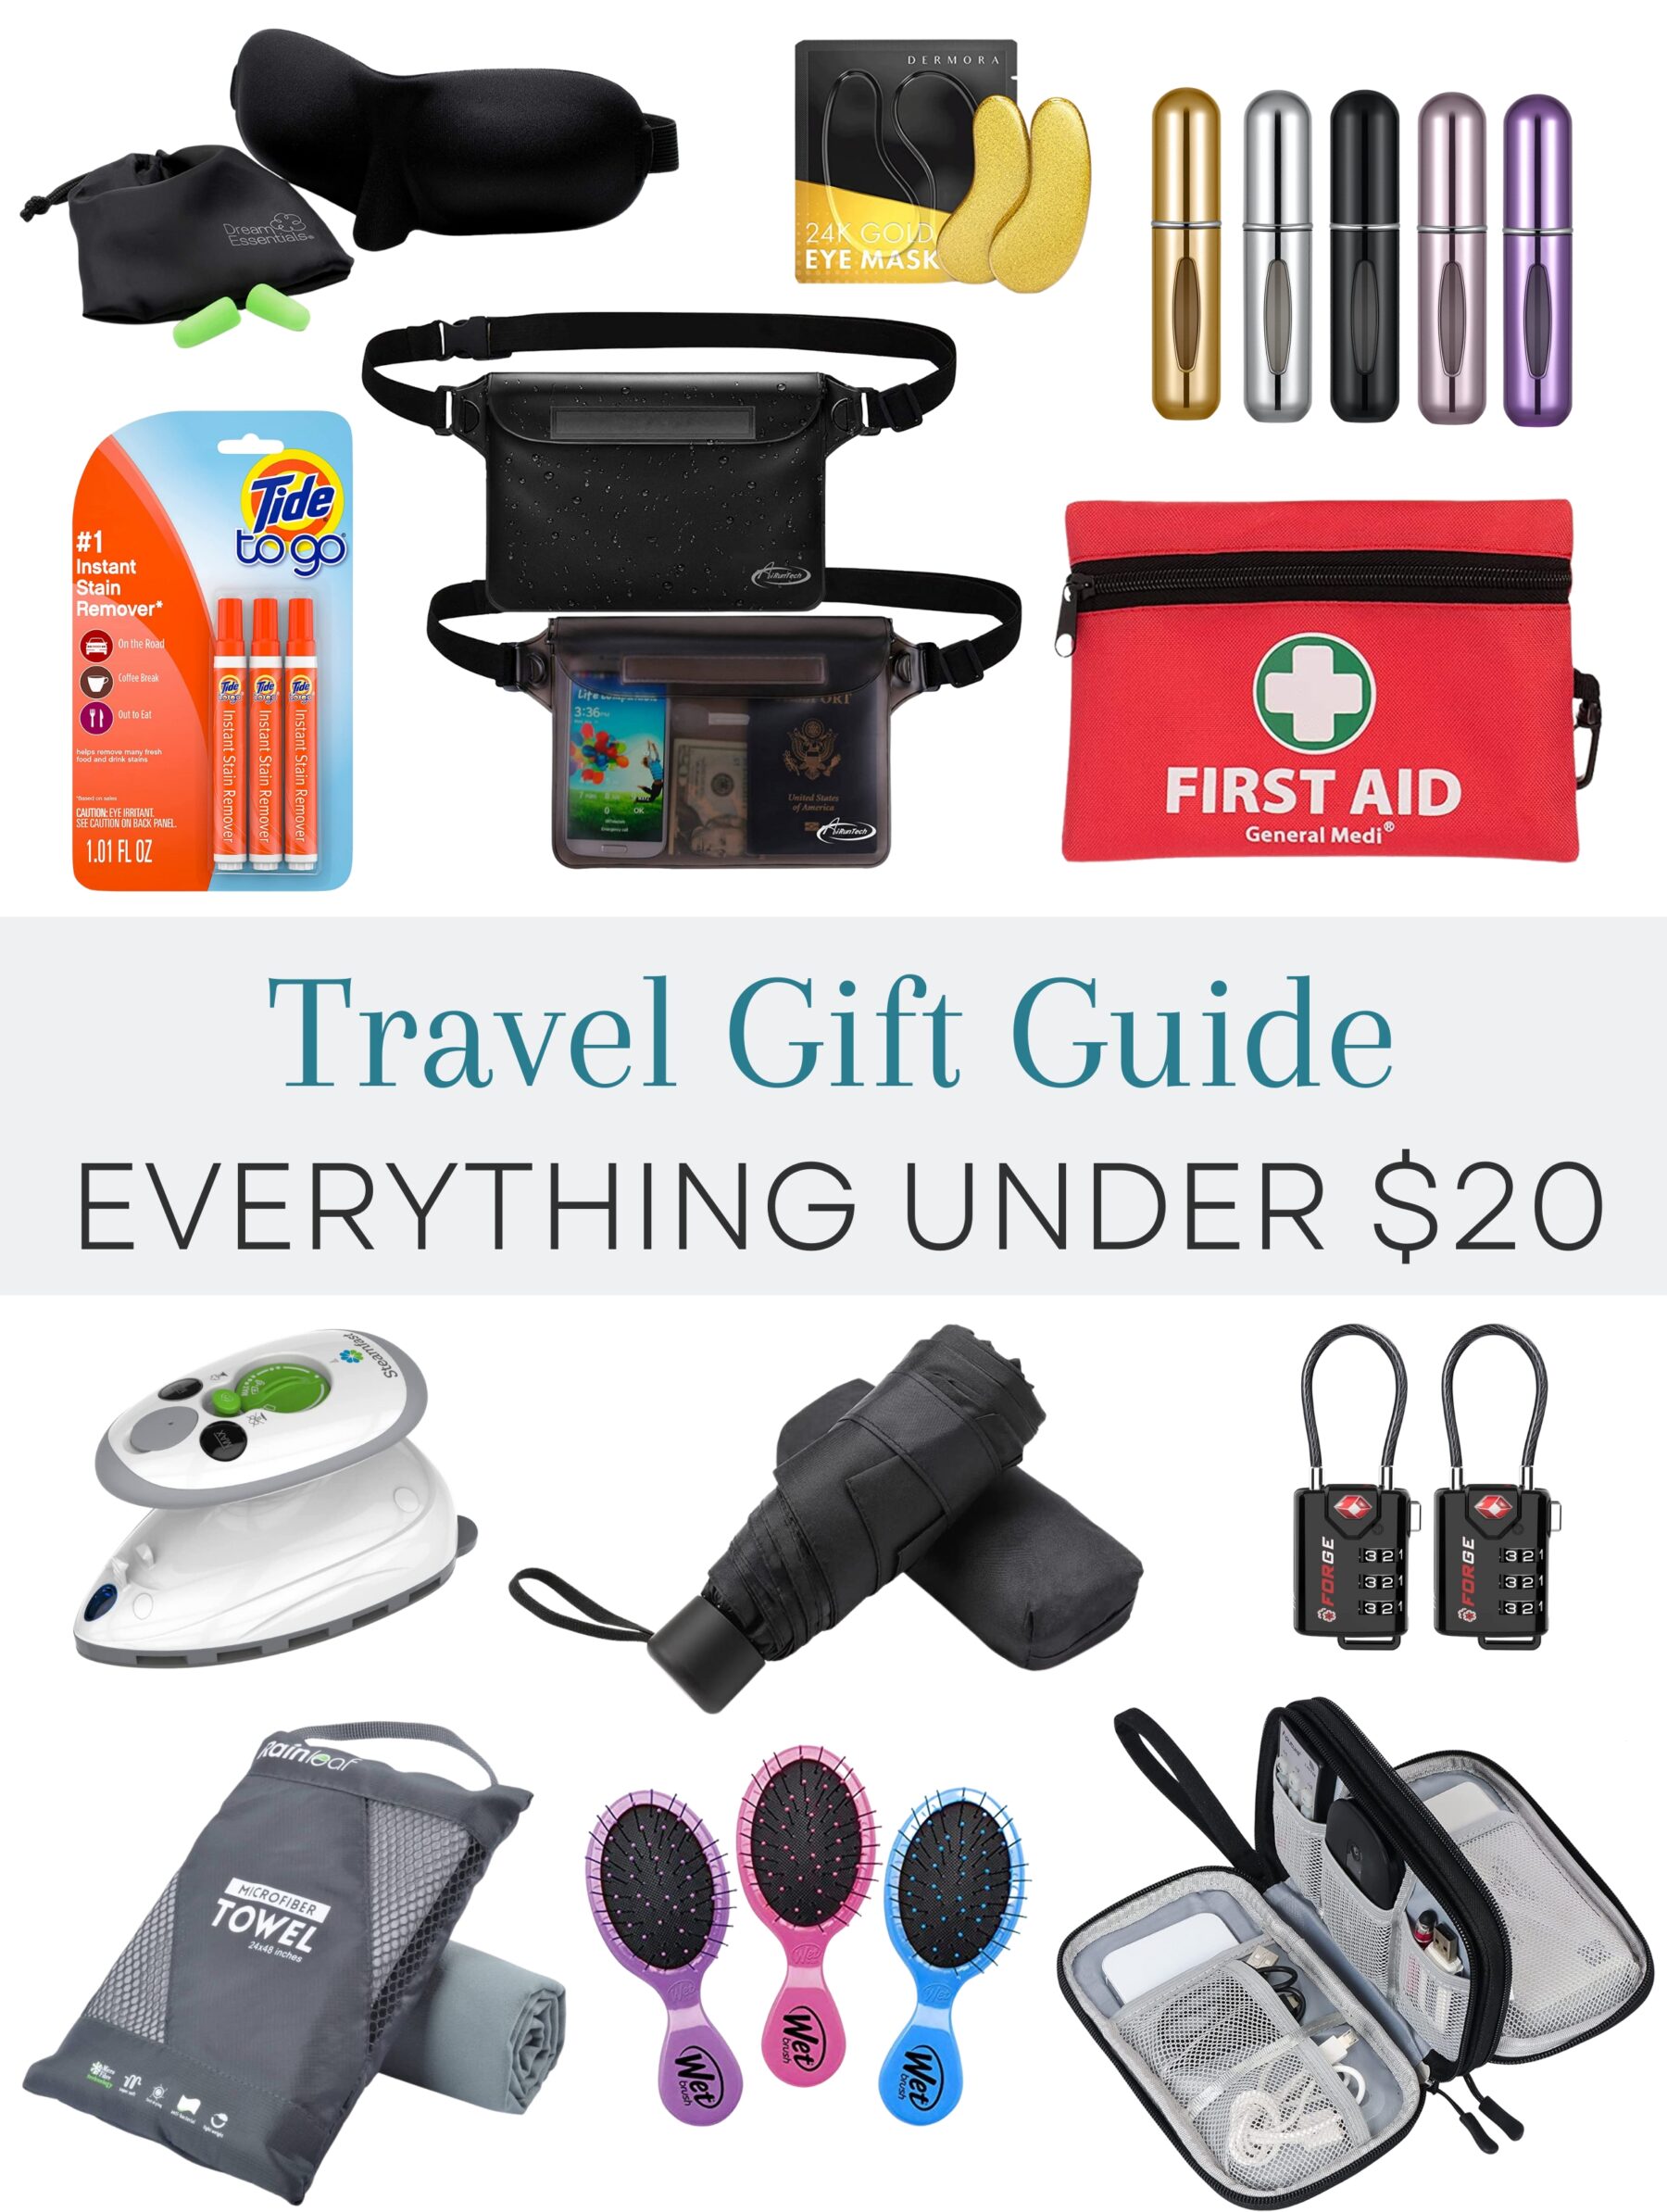 https://thejetlagjourney.com/wp-content/uploads/2022/11/Under-20-Gift-Guide-for-travelers-cover-1.jpg